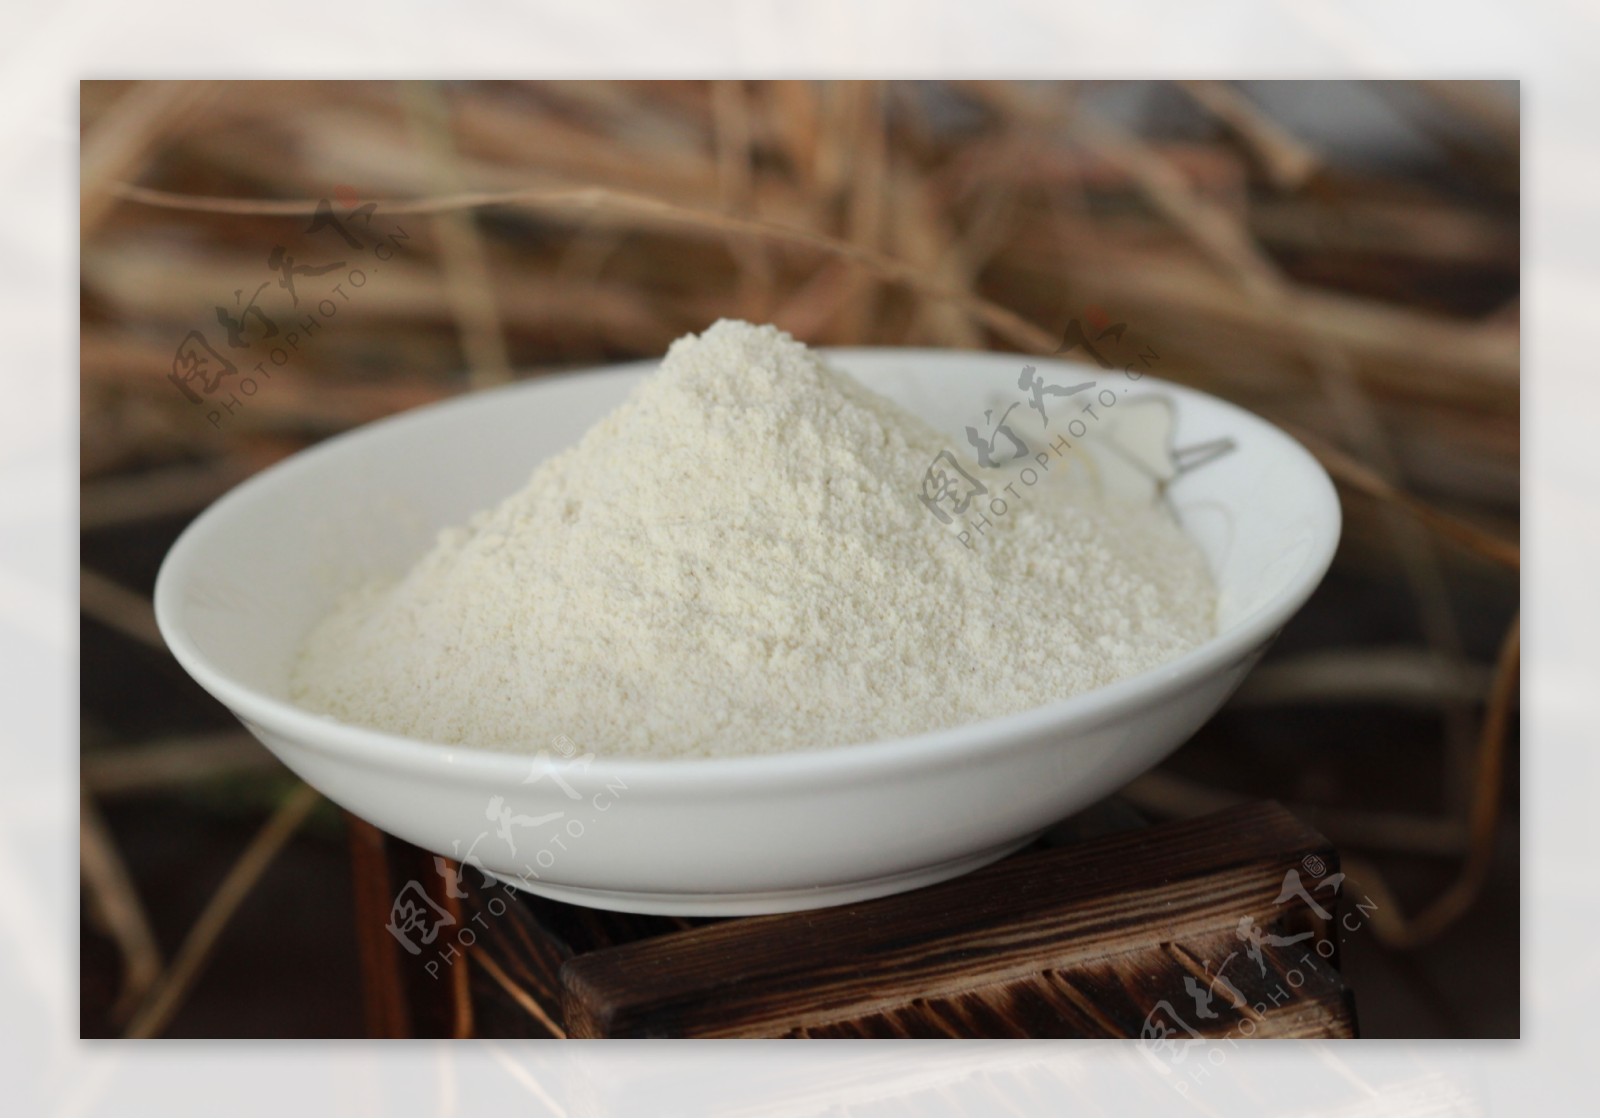 面粉苦荞粉荞麦面粉制作